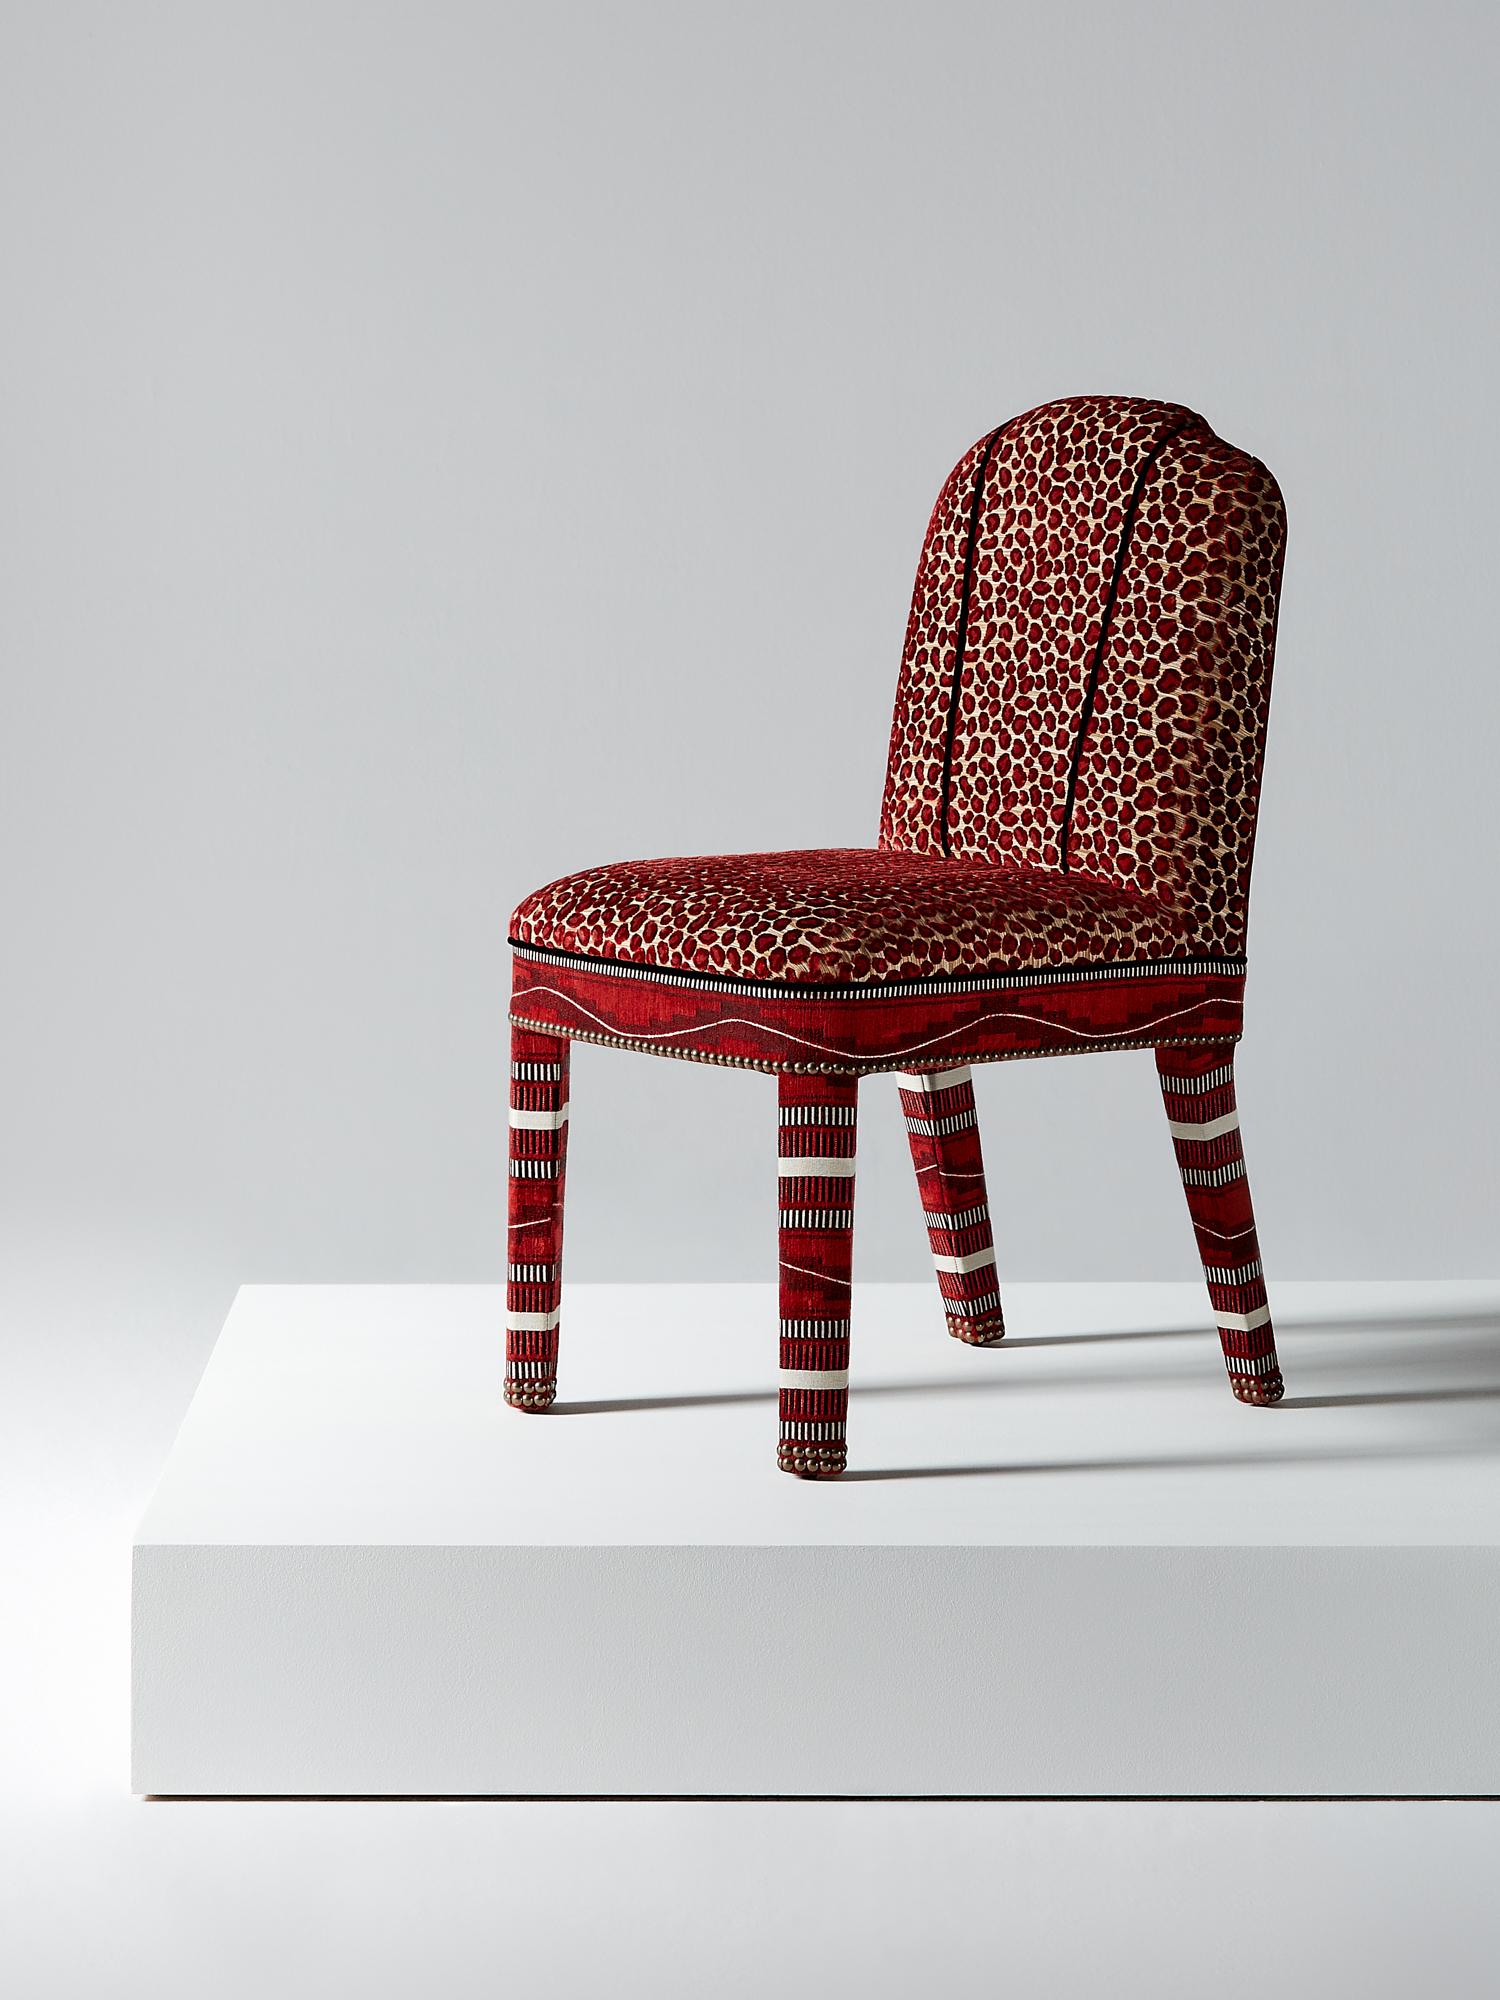 And Objects, ein von Martin Brudnizki und Nick Jeanes gegründetes Studio für Produktdesign mit Sitz in London.

Der Abbas-Esszimmerstuhl ist eine moderne Variante des klassischen gepolsterten Esszimmerstuhls. Er stützt den Rücken des Sitzenden